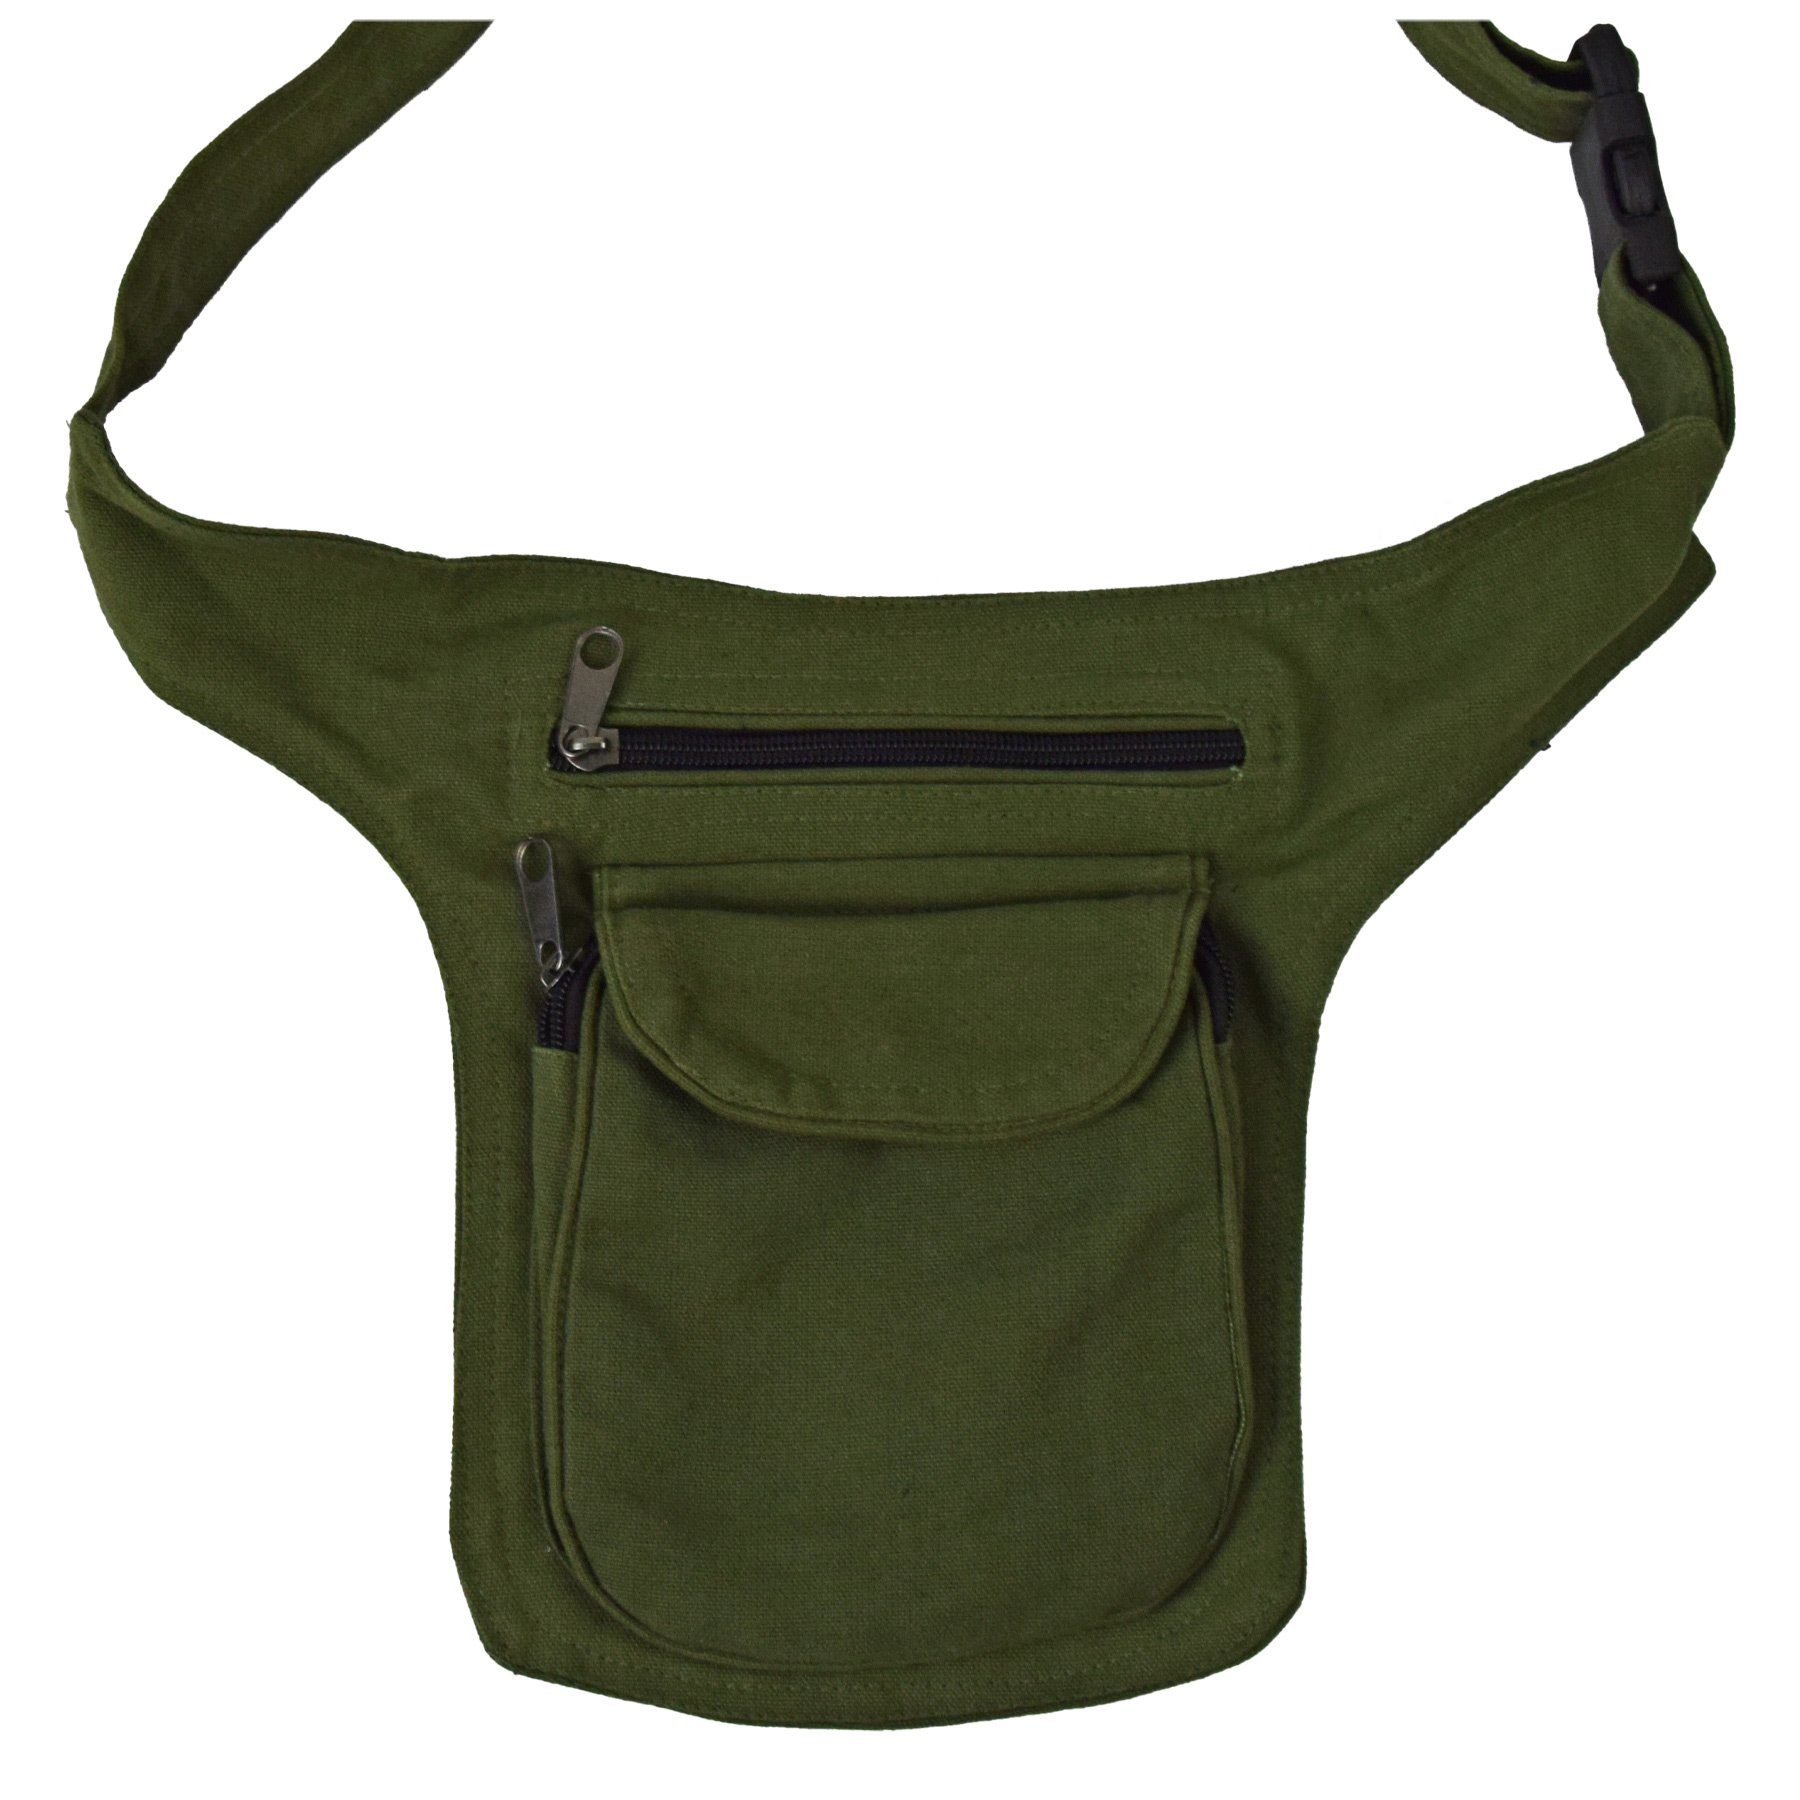 SIMANDRA Bauchtasche Gürteltasche für Damen und Herren - Bauchtasche Hüfttasche handgefertigt in Nepaln - klein Grün